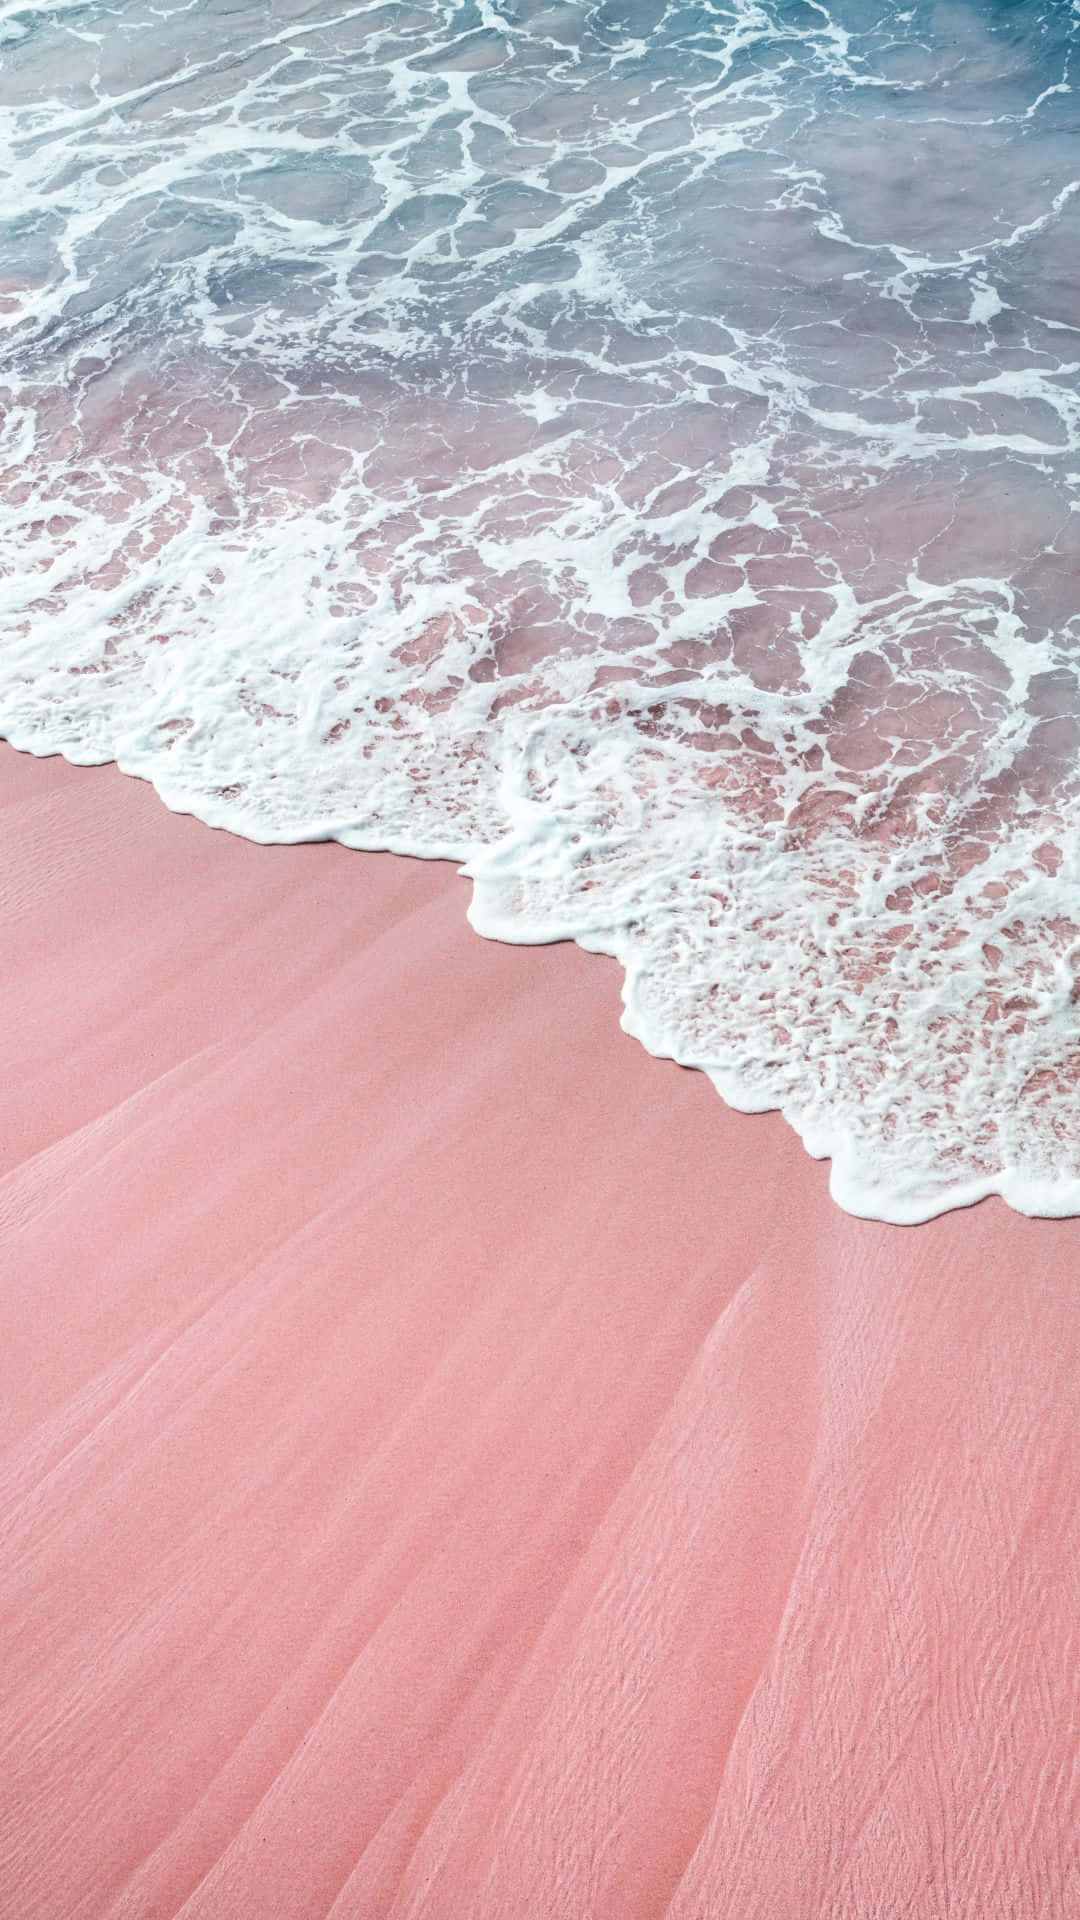 Praiade Areia Rosa Com Ondas E Oceano